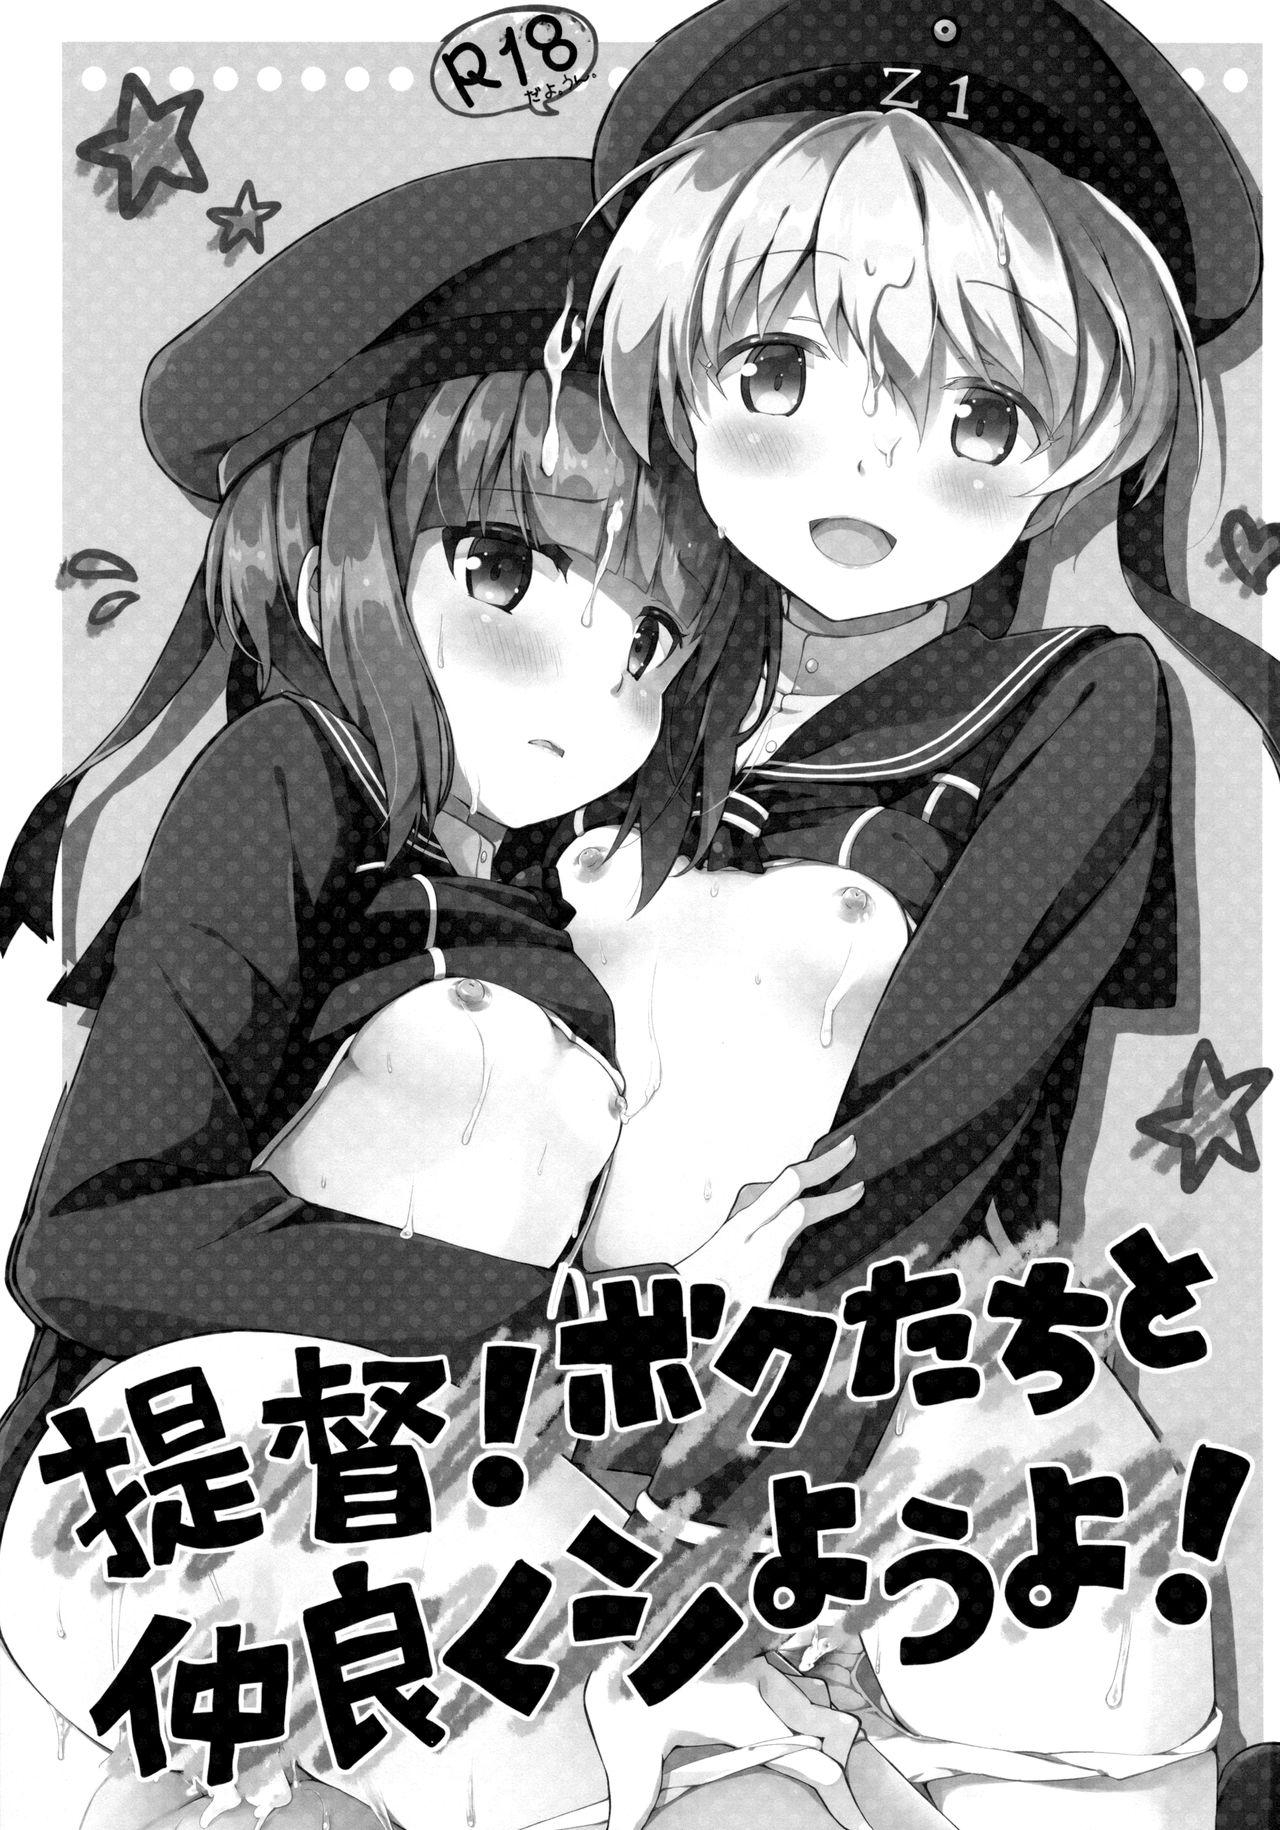 Teitoku! Bokutachi To Nakayoku Shiyou Yo! | Admiral! Let's "Get Along"! 2